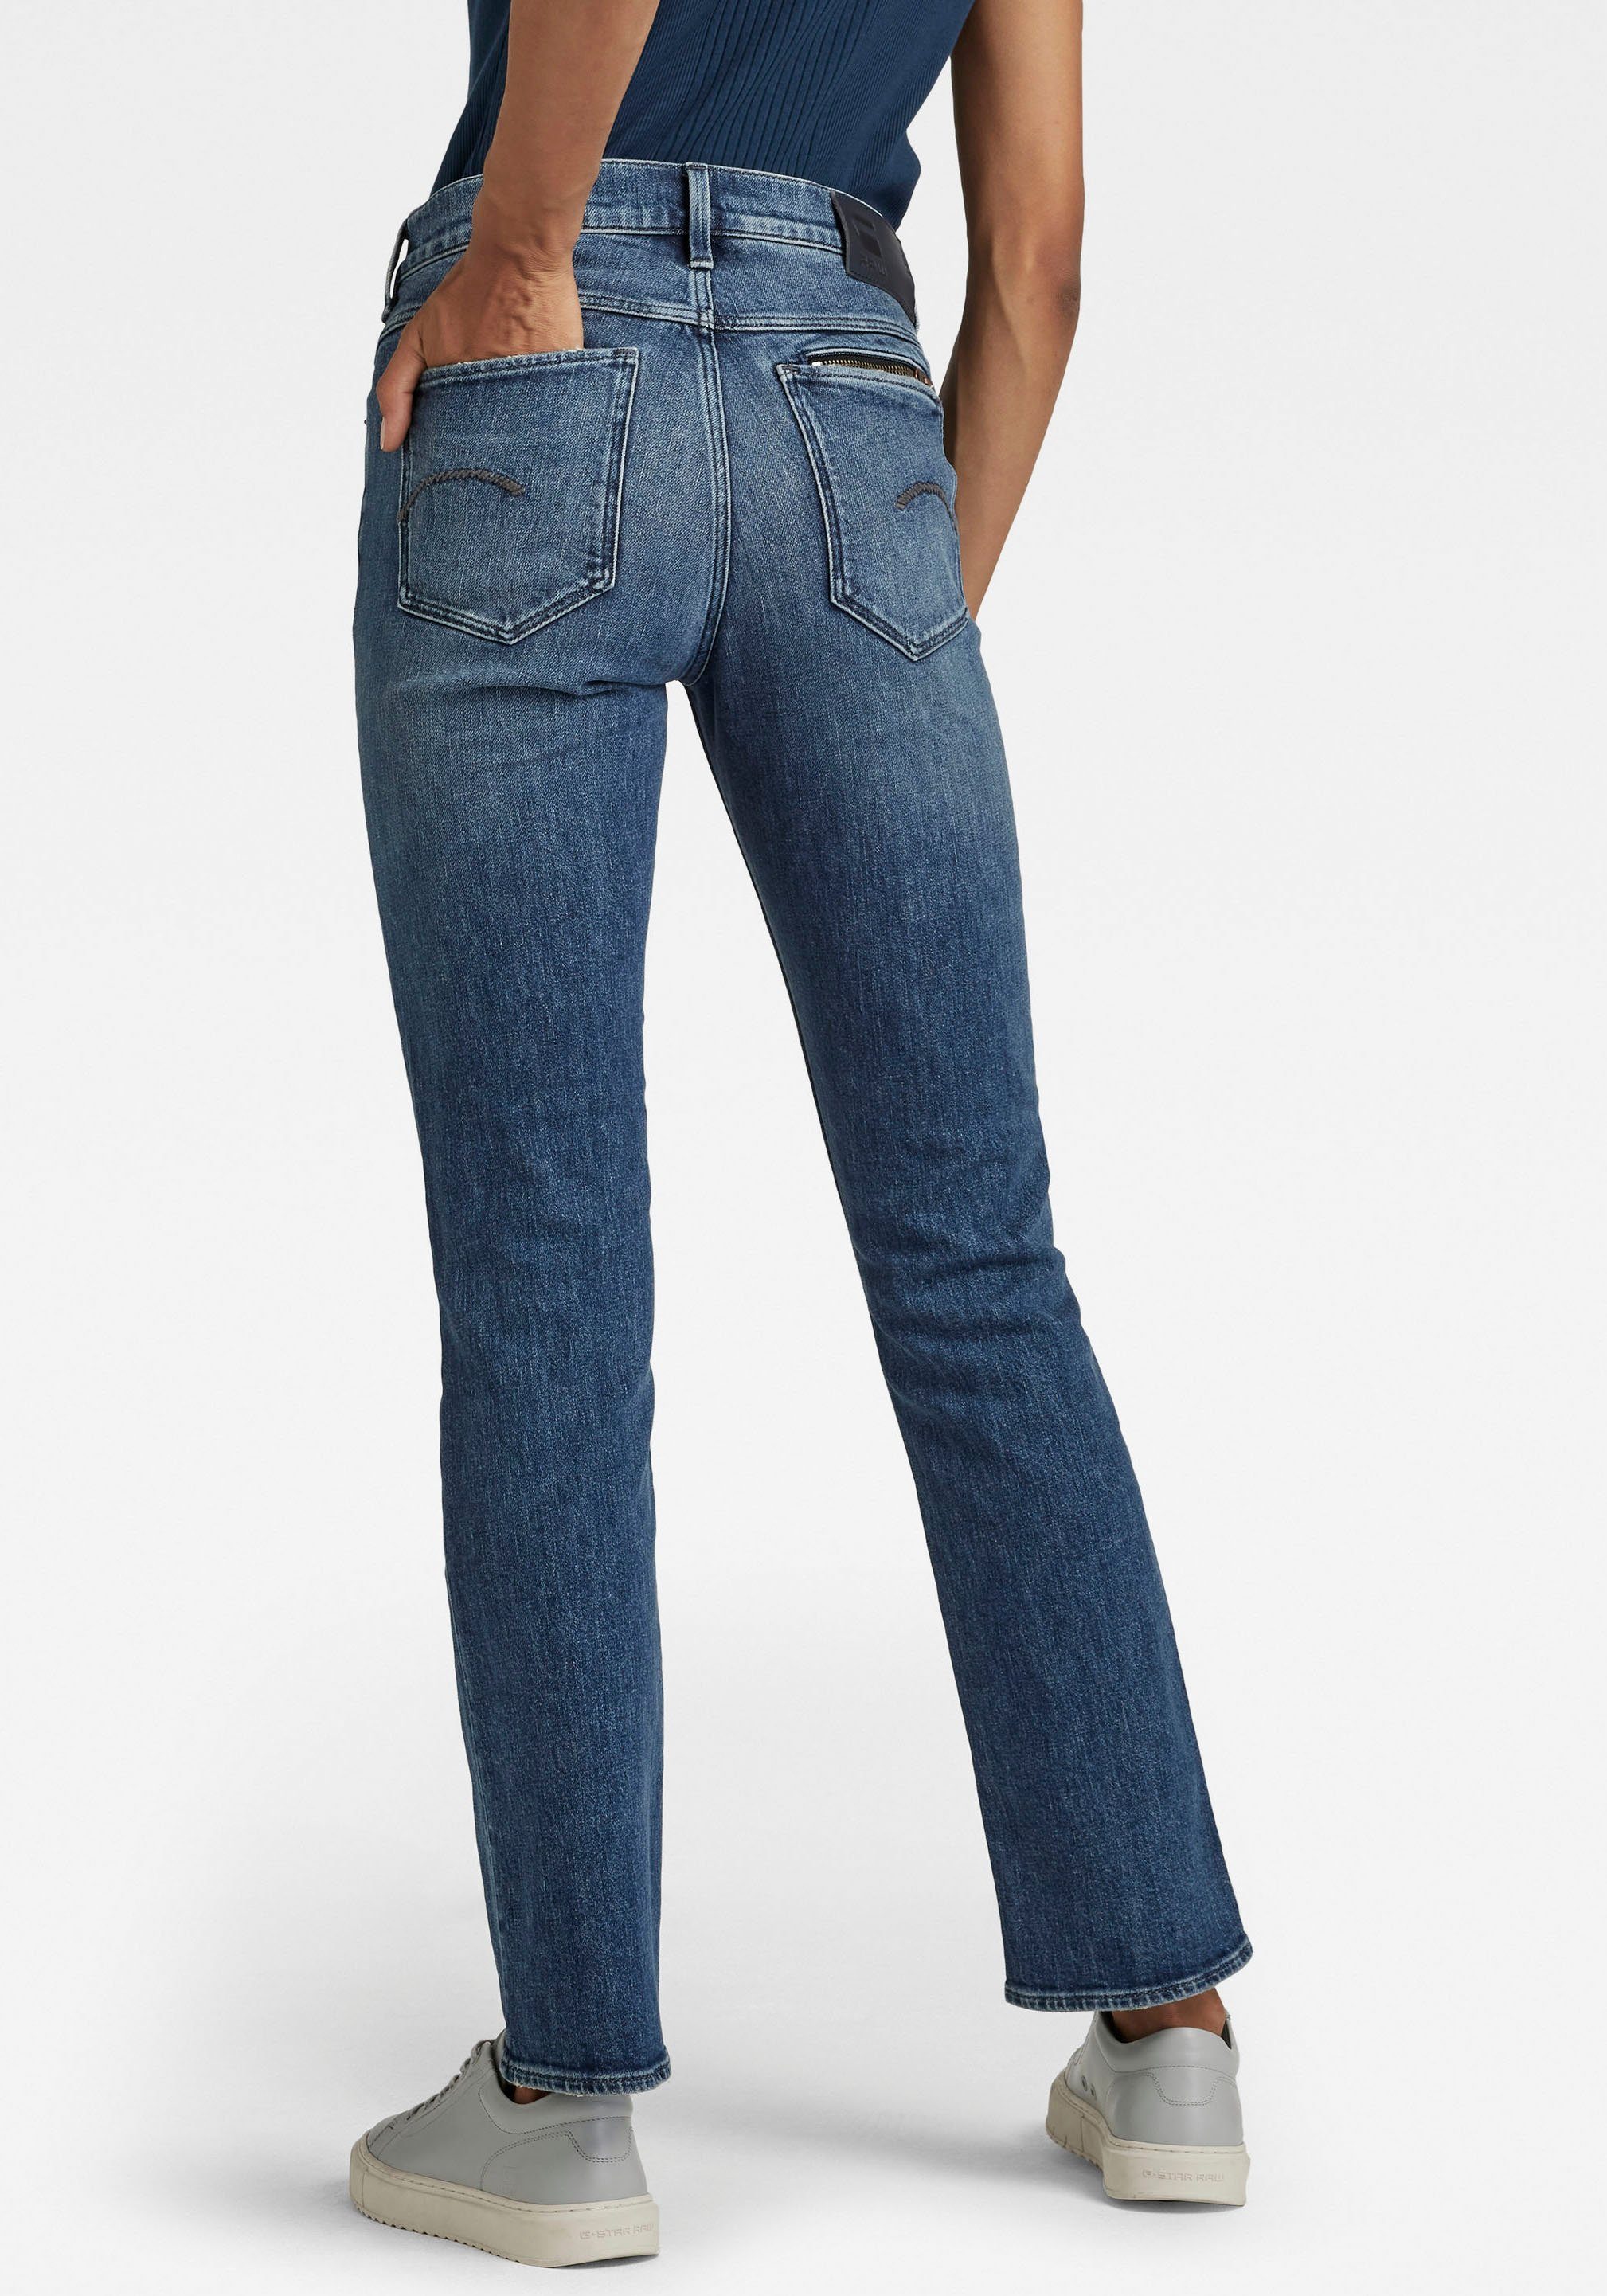 Damen Jeans G-Star RAW Straight-Jeans Noxer High Straight mit Umschlagsaum u. Reißverschlusstasche an der Gesäßtasche